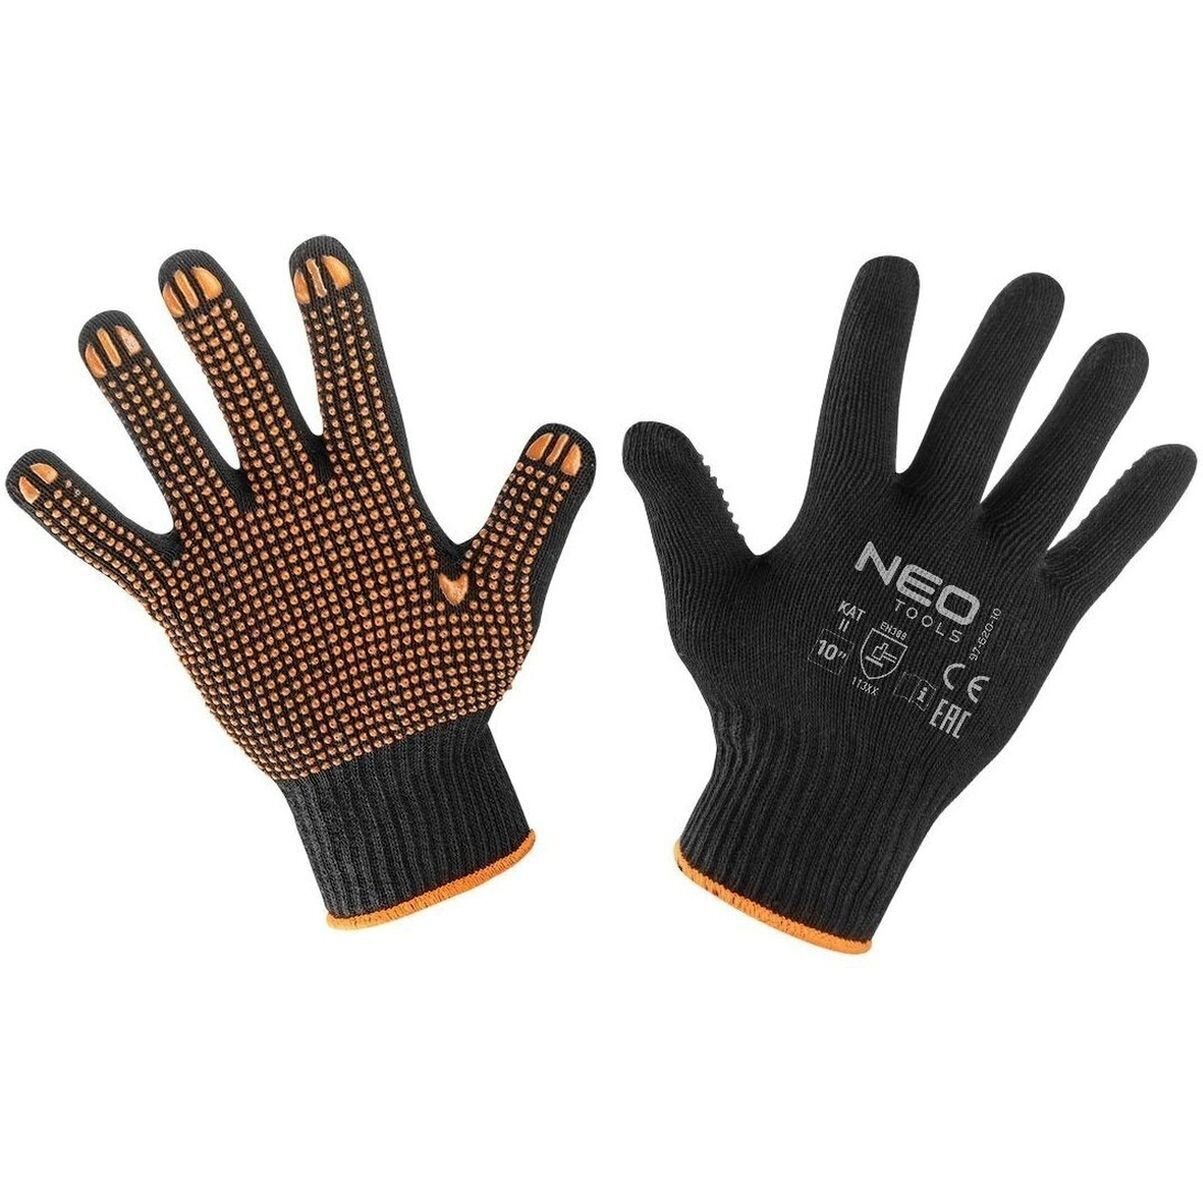 Перчатки Neo Tools рабочие, хлопок и полиэстер, пунктир, размер 10 (97-620-10) фото 1